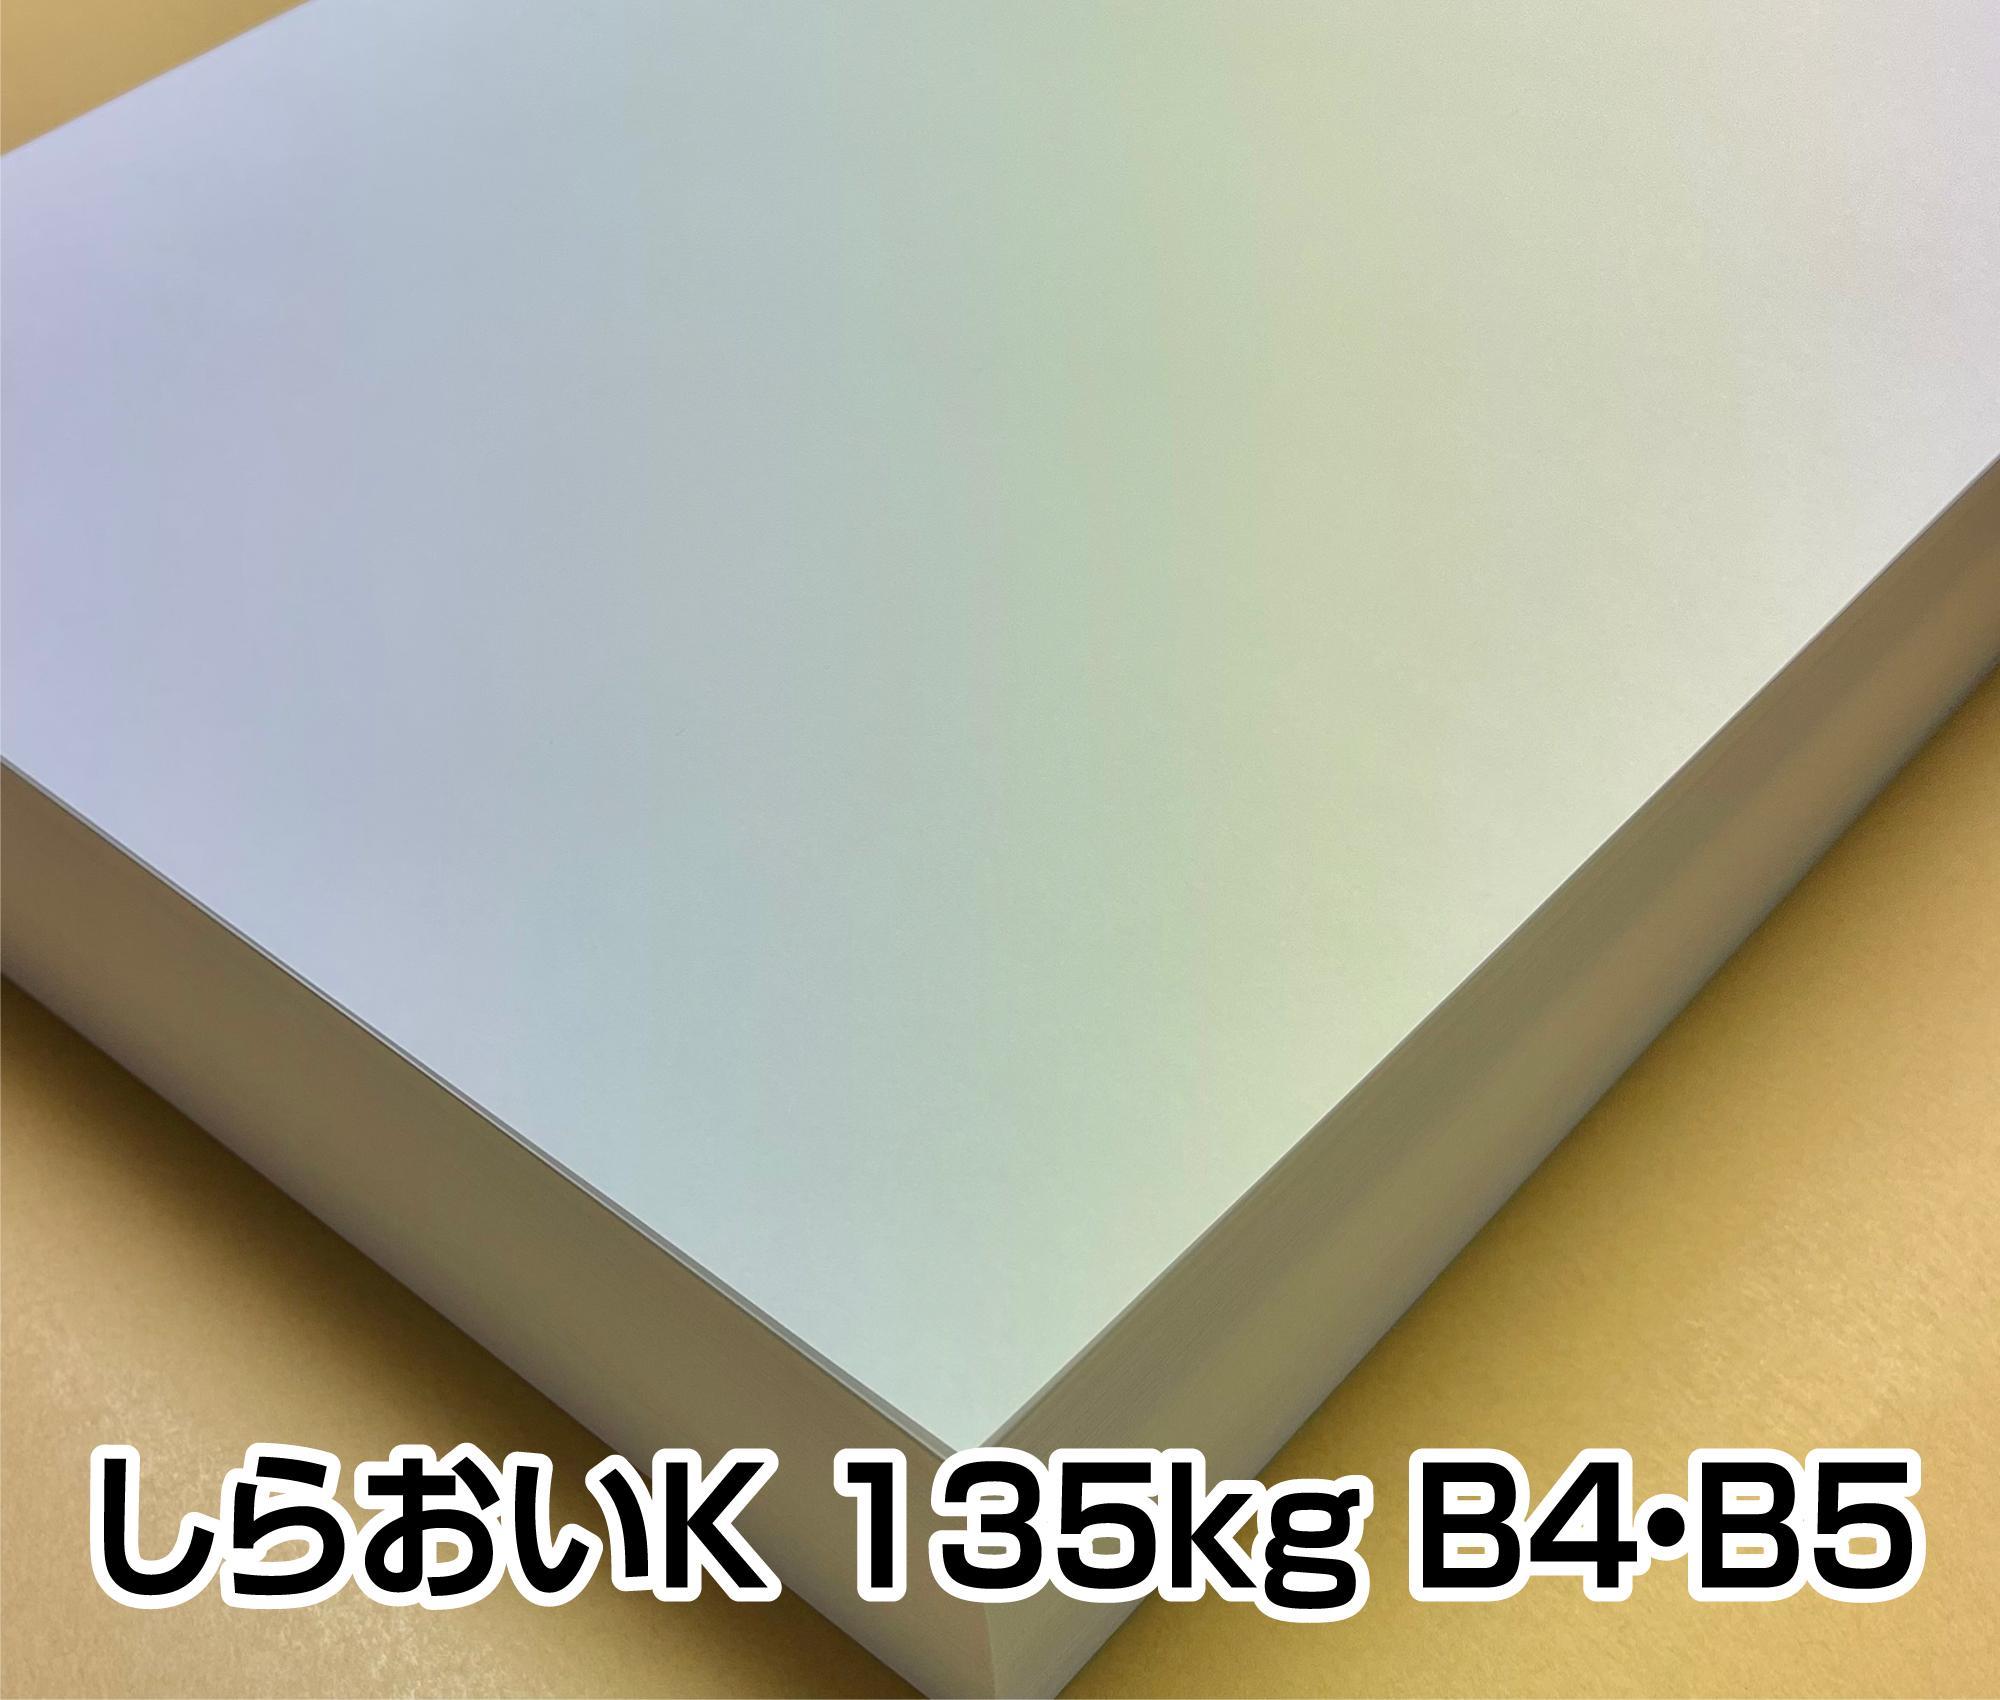 上質紙　しらおいK 135kg 157g A3/A4/B4/B5/ハガキサイズ